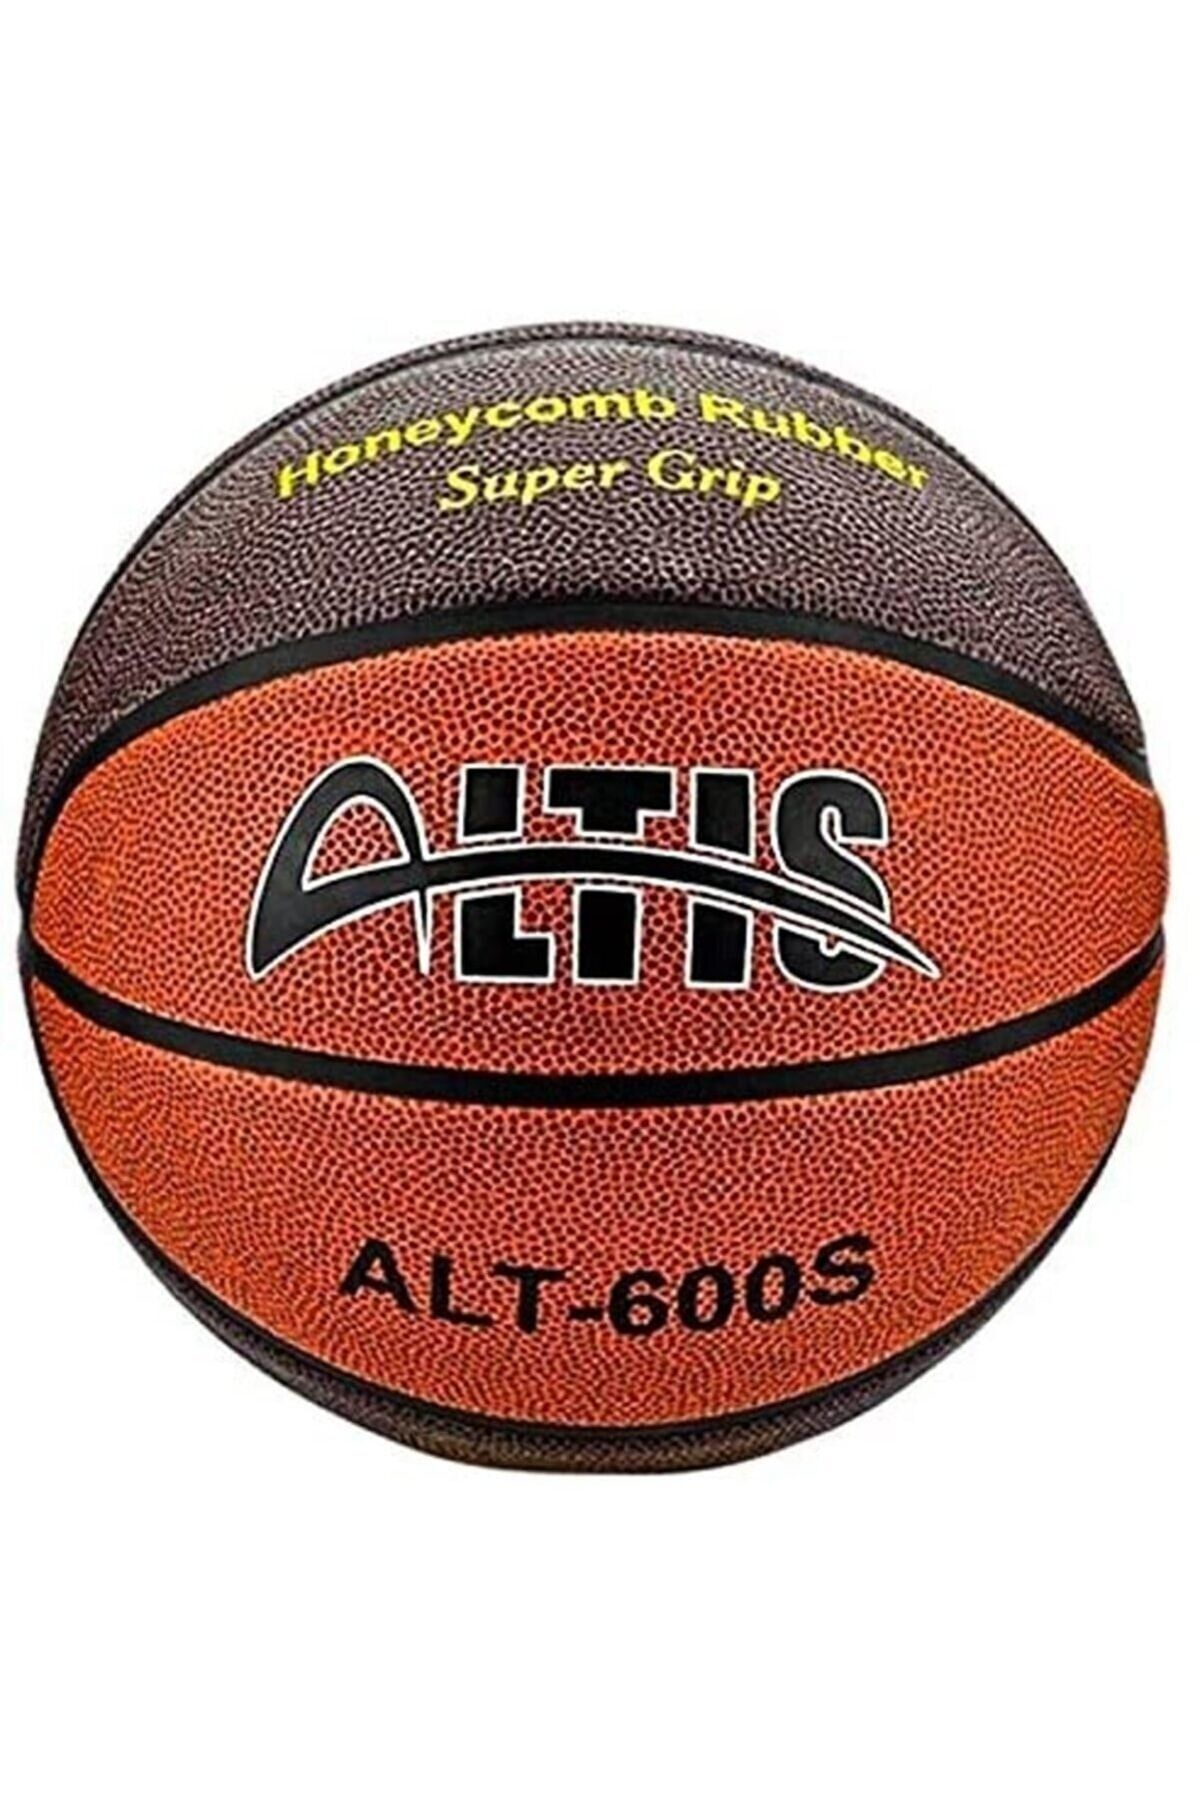 ALTIS Alt-600s Super Grip Basketbol Topu 6 No